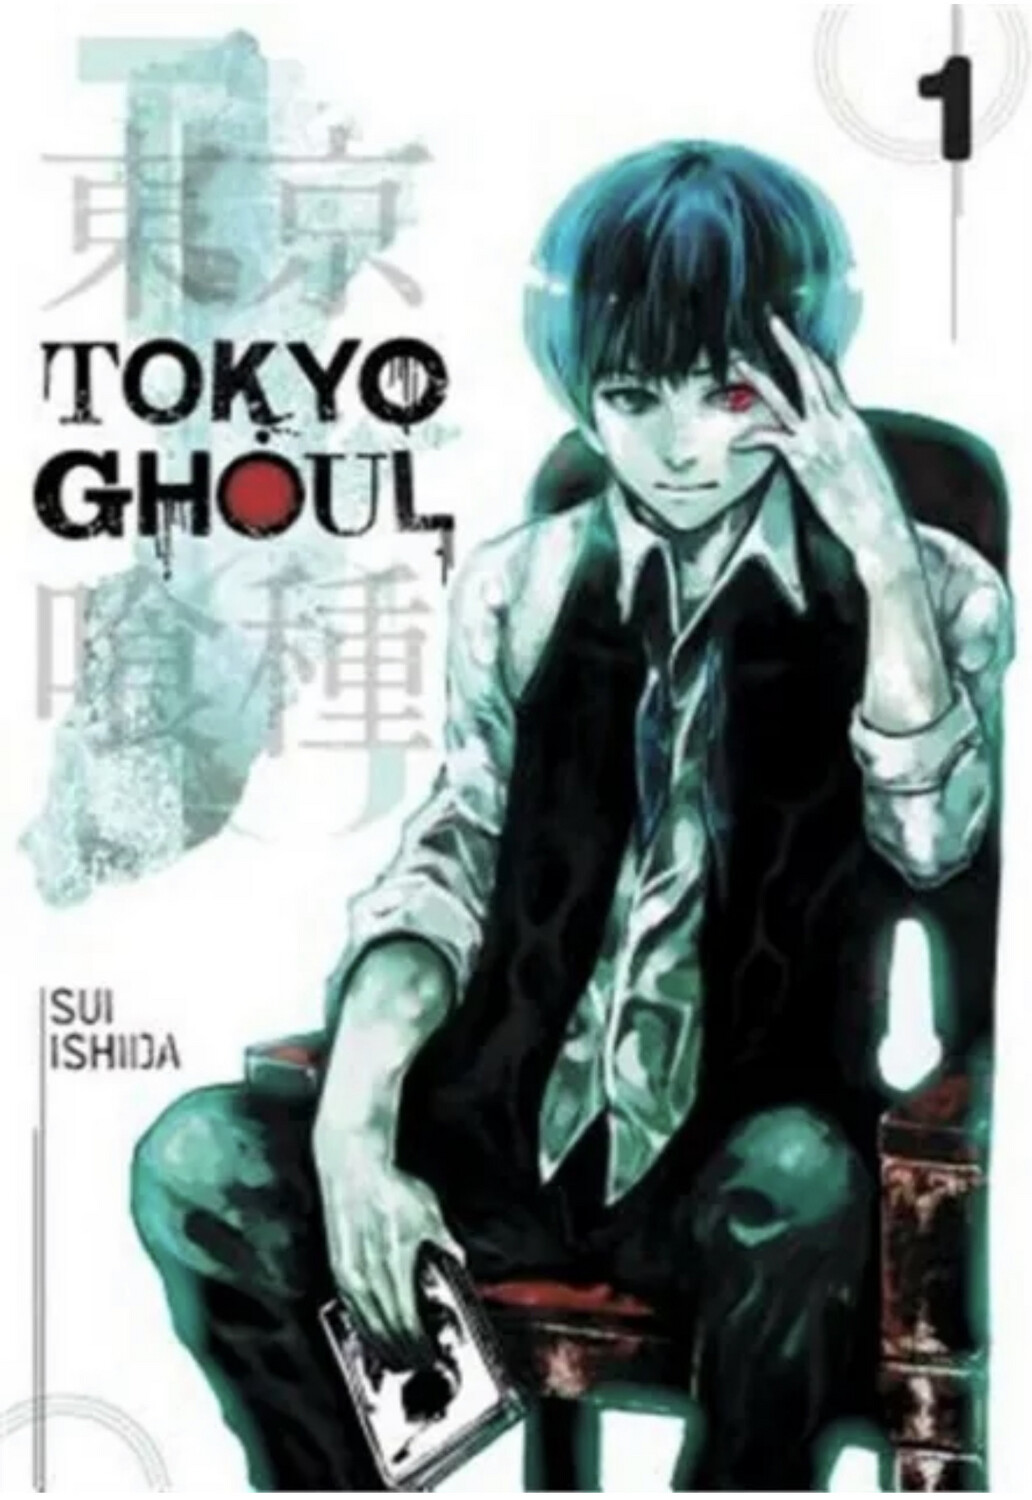 Tokyo Ghoul #1